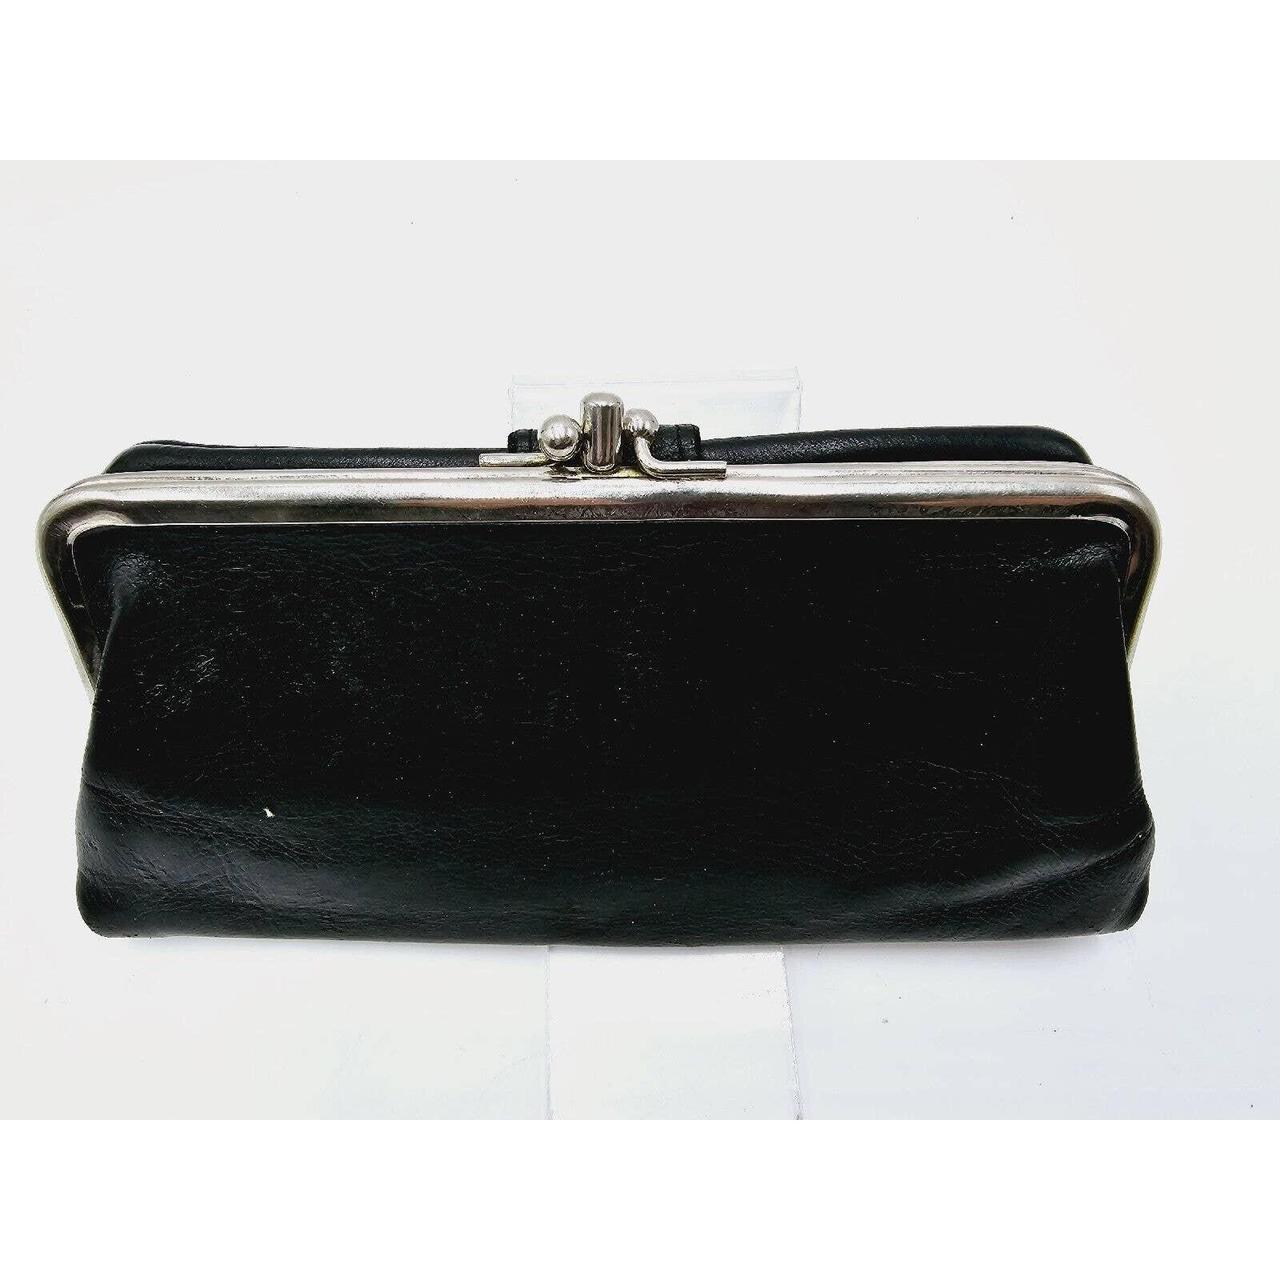 Vintage Black slim leather Wallet This genuine - Depop